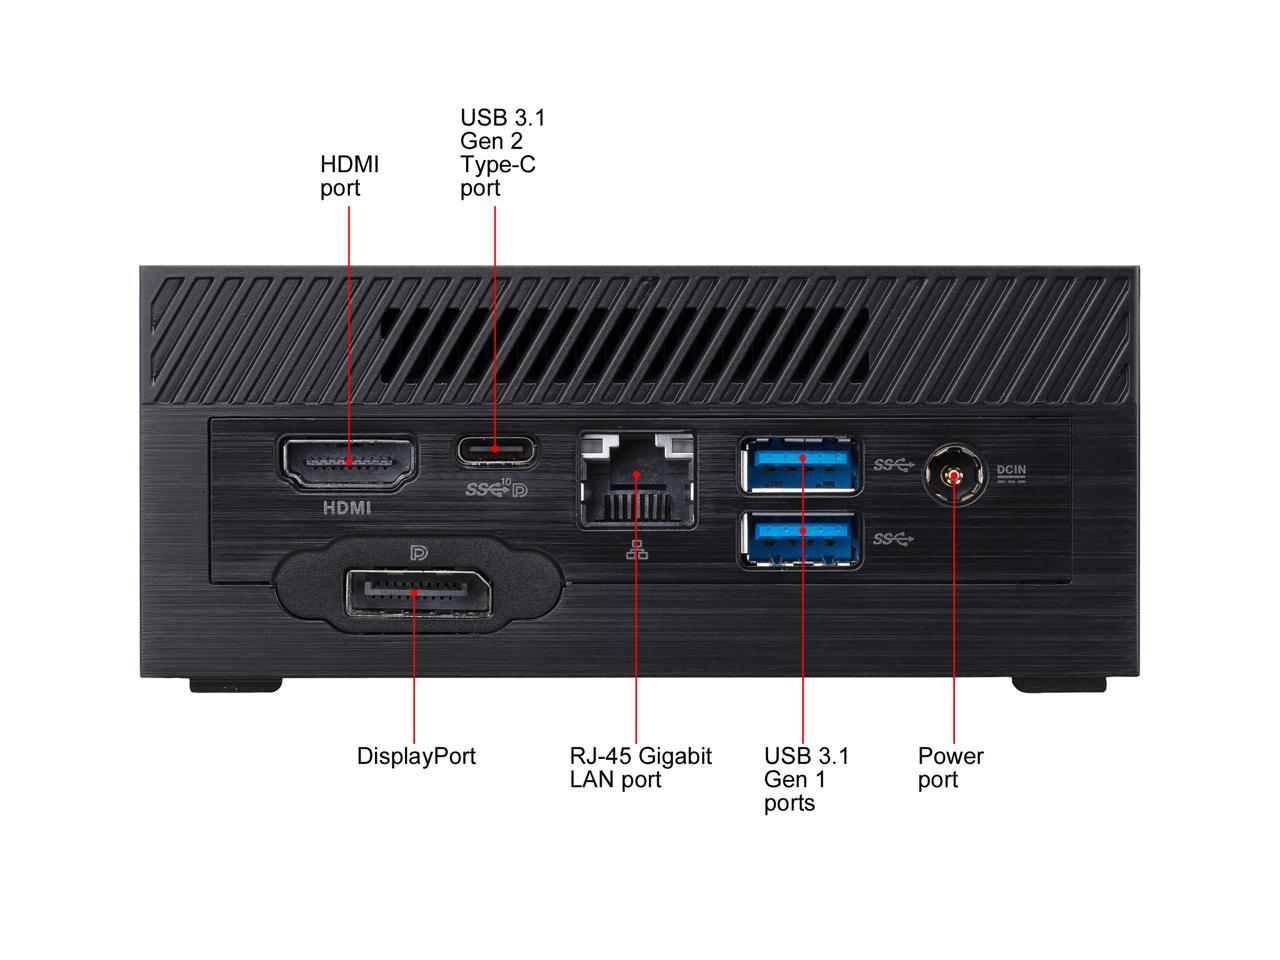 Asus Pn50-Bbr065Md Amd Renoir Fp6 R5-4500U/ Ddr4/ Wifi/ Usb3.1 Mini Pc Barebone System (Black)